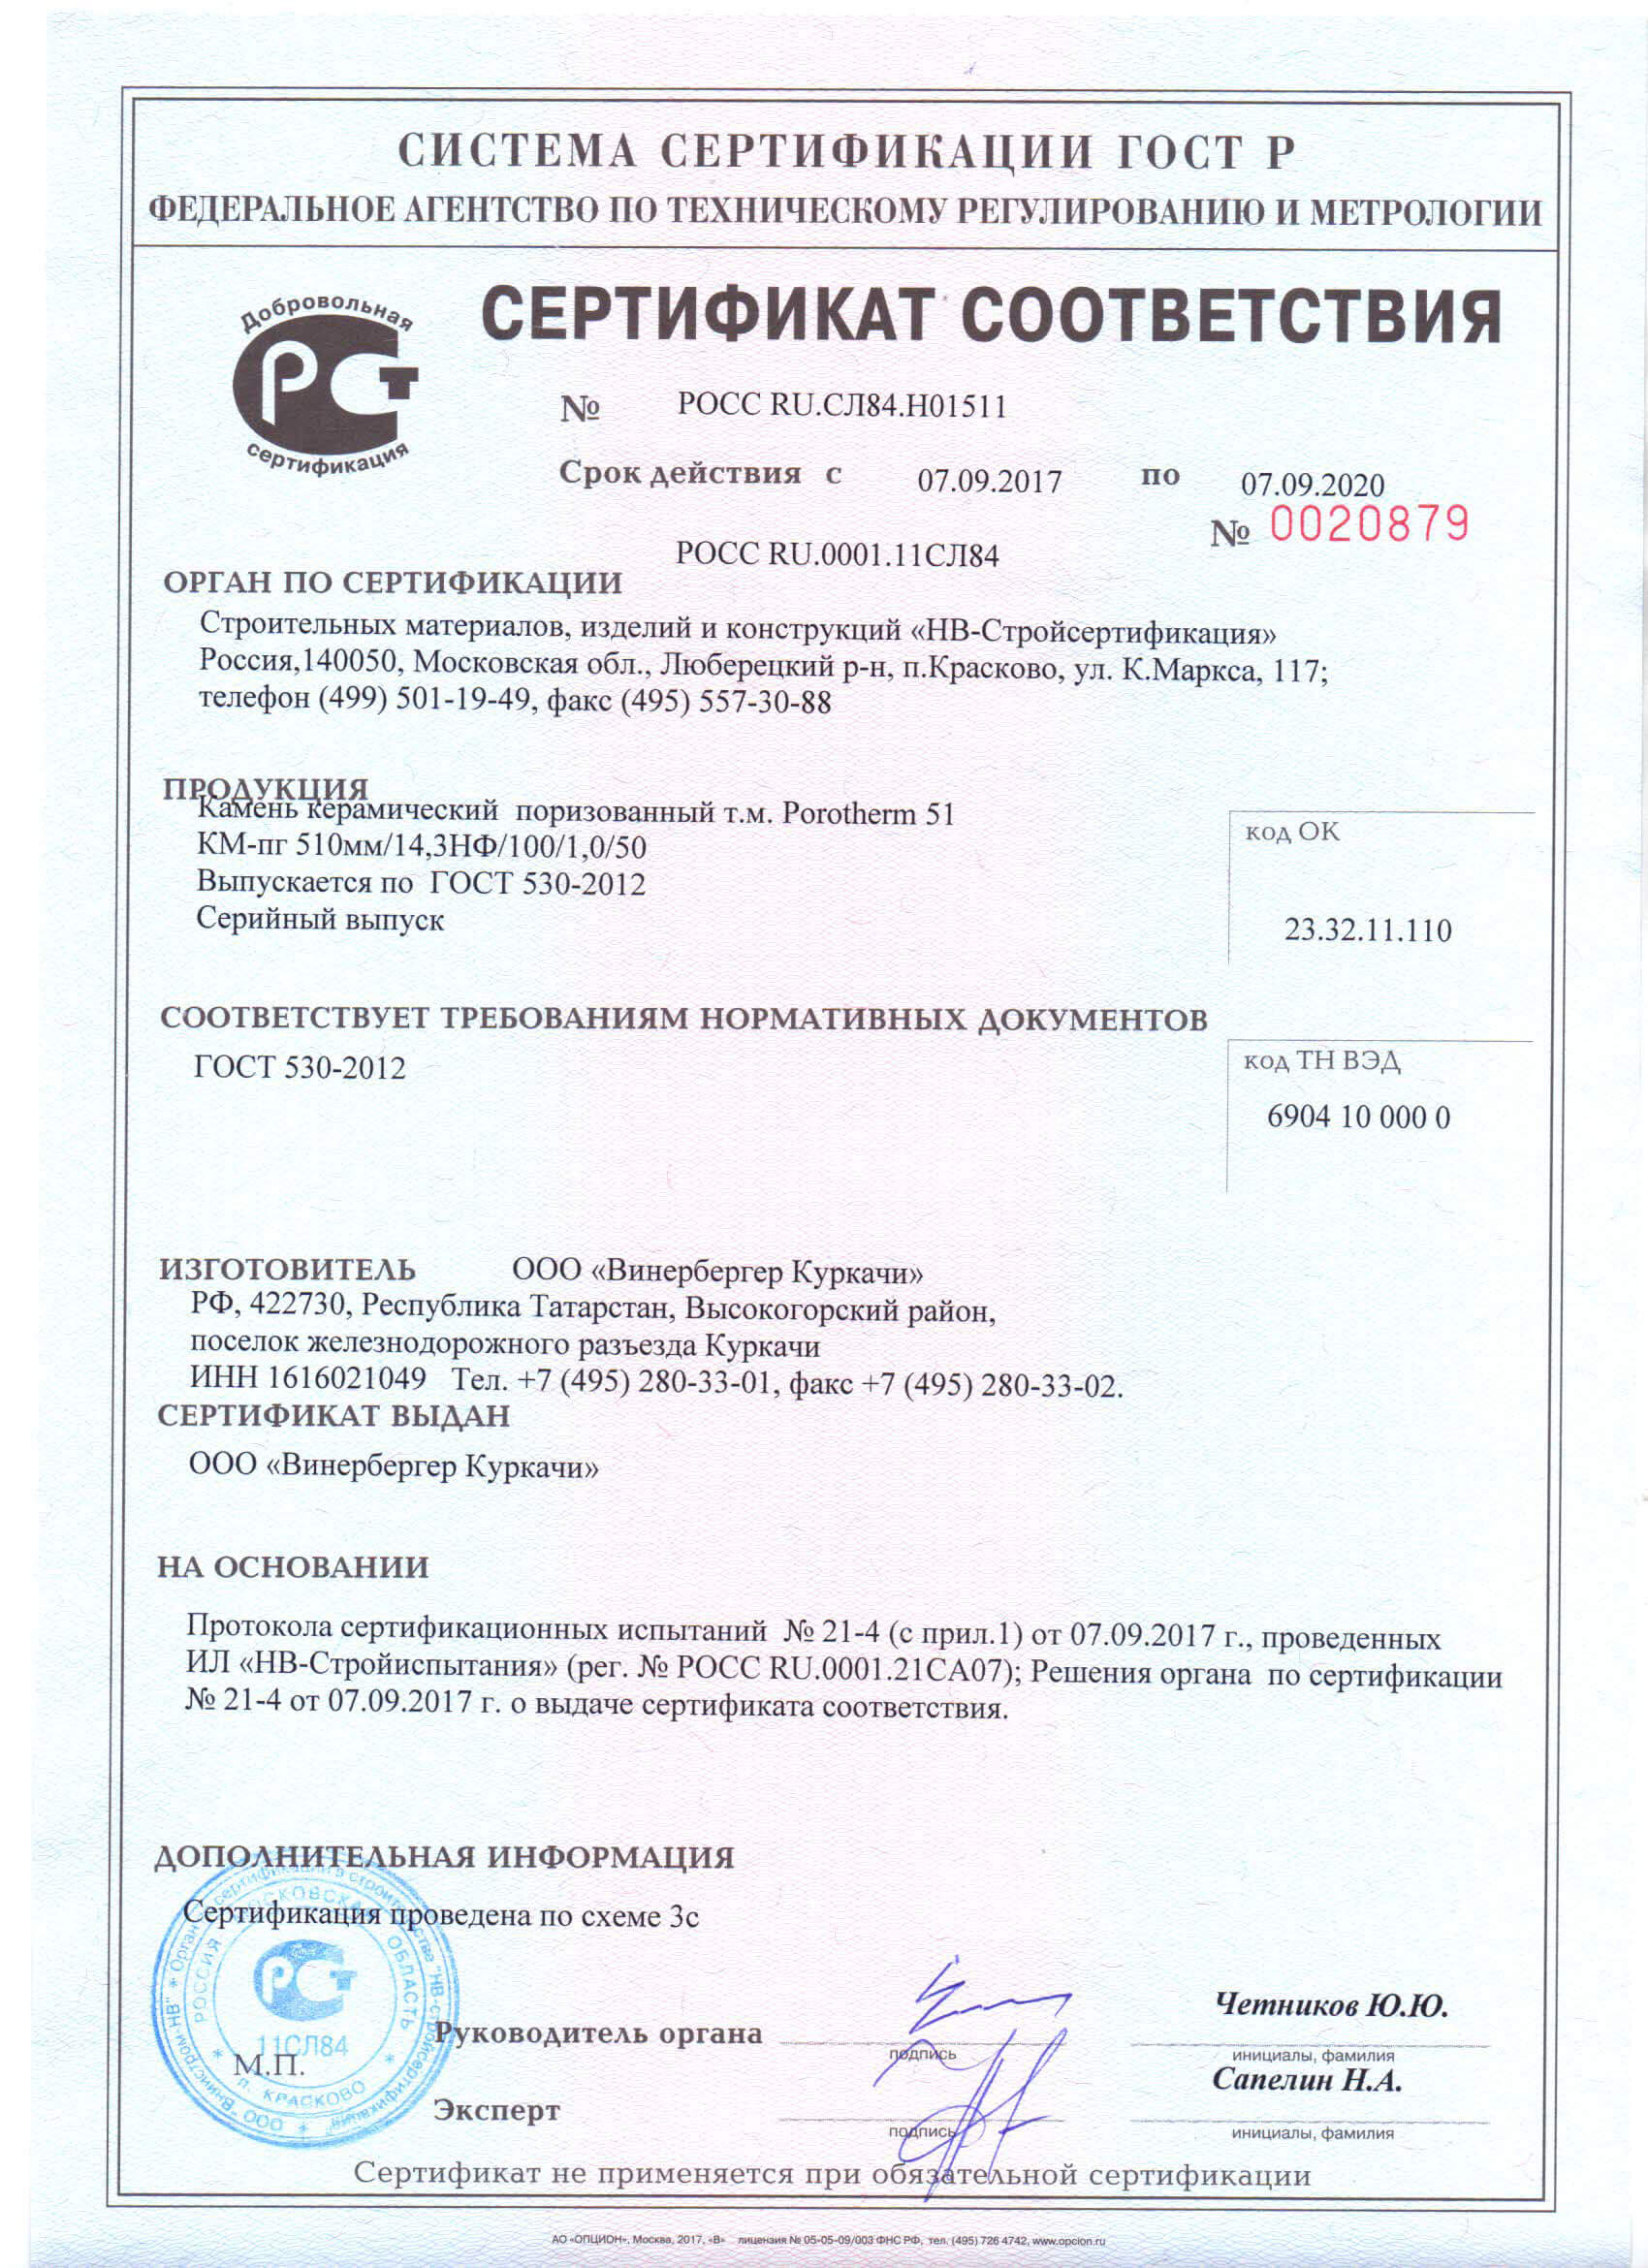 Сертификат соответствия ГОСТ 530-2012 на керамические блоки Porotherm 51, Porotherm 44 и Porotherm 38 (Кипрево)